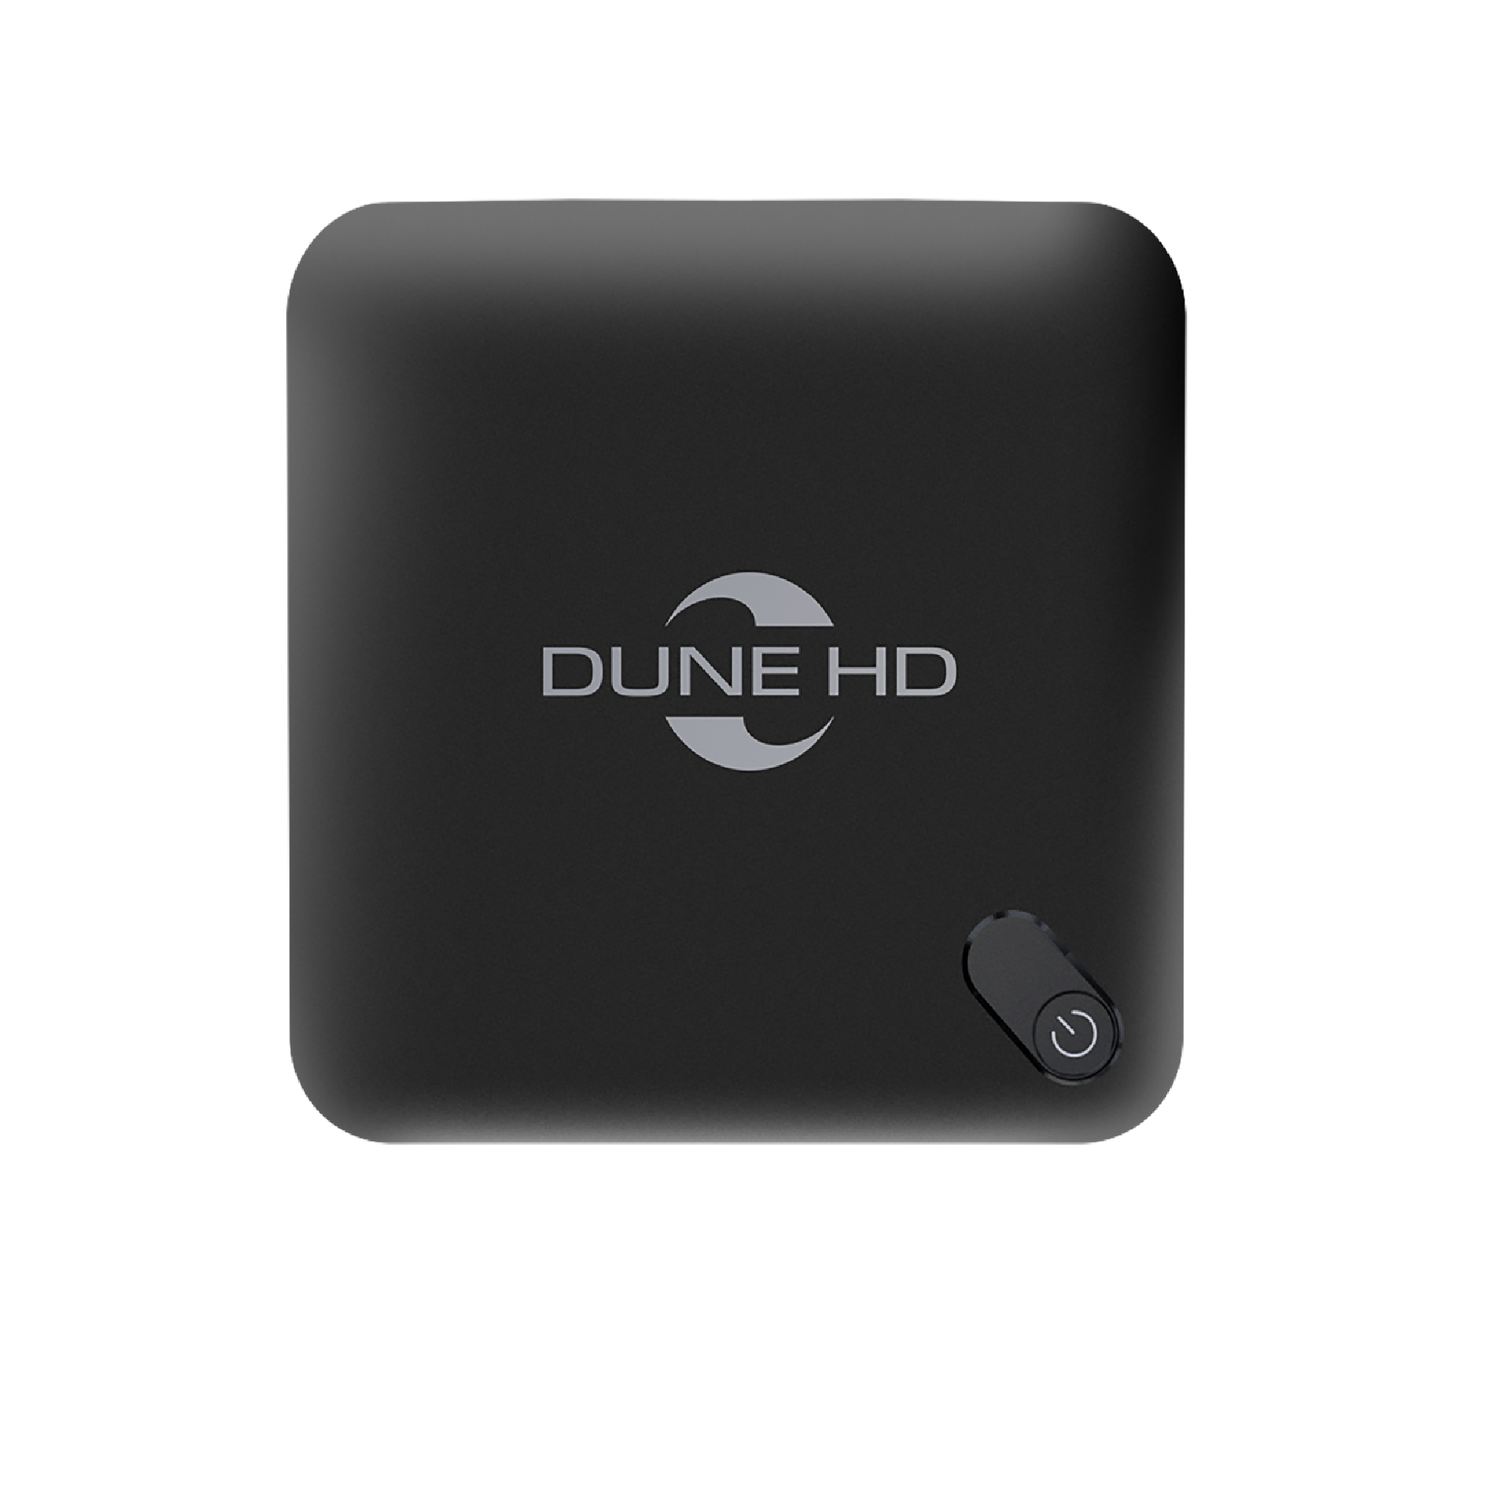 Dune magic plus. Dune HD Smartbox 4k Plus. Медиаплеер Dune Magic 4k Plus. Dune HD Magic 4k Plus. Медиаплеер артикул 74076.